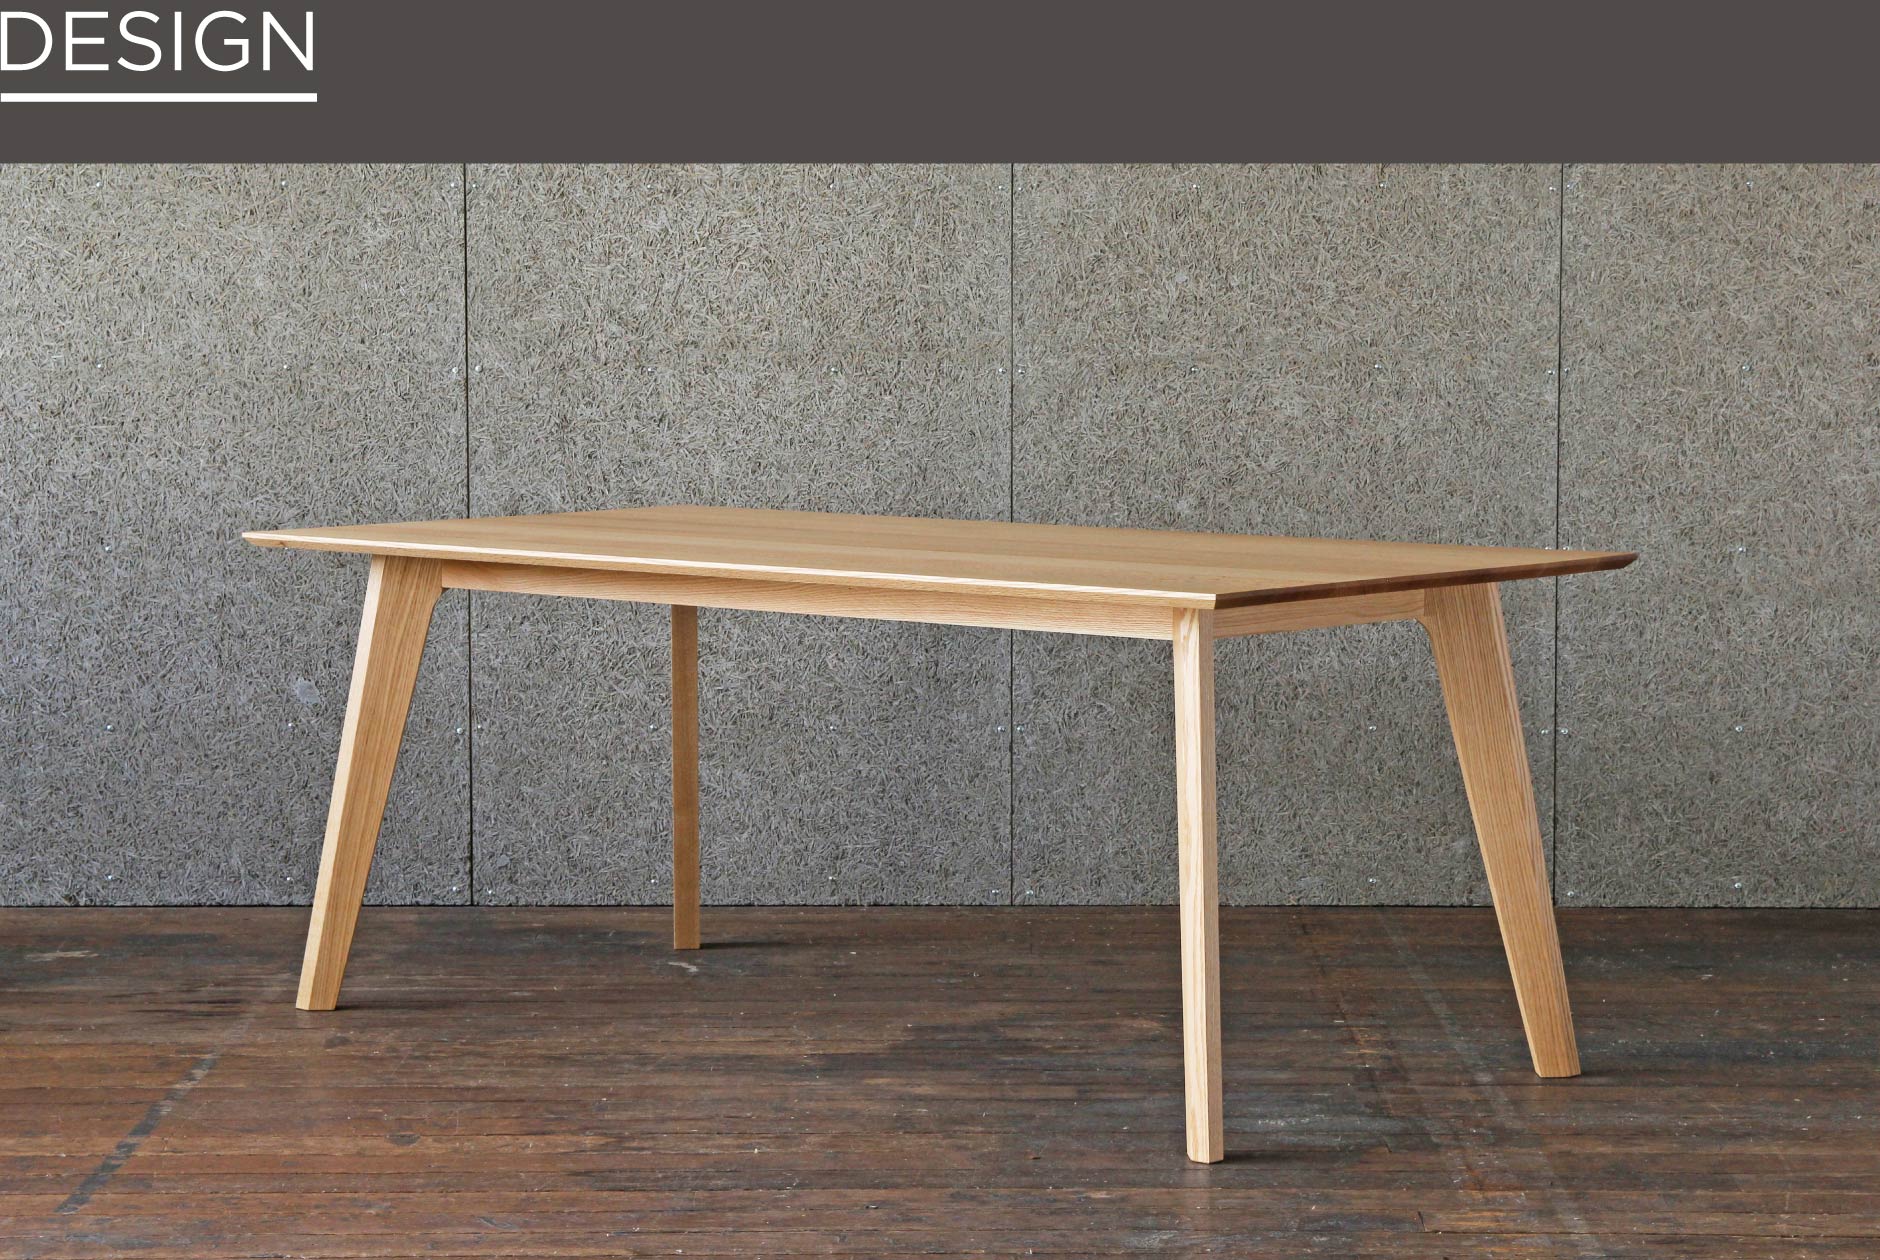 福岡で製作された国産のダイニングテーブル。上質な天然木を使用しているので高級感があります。天板は20mmと薄いのでスッキリです。